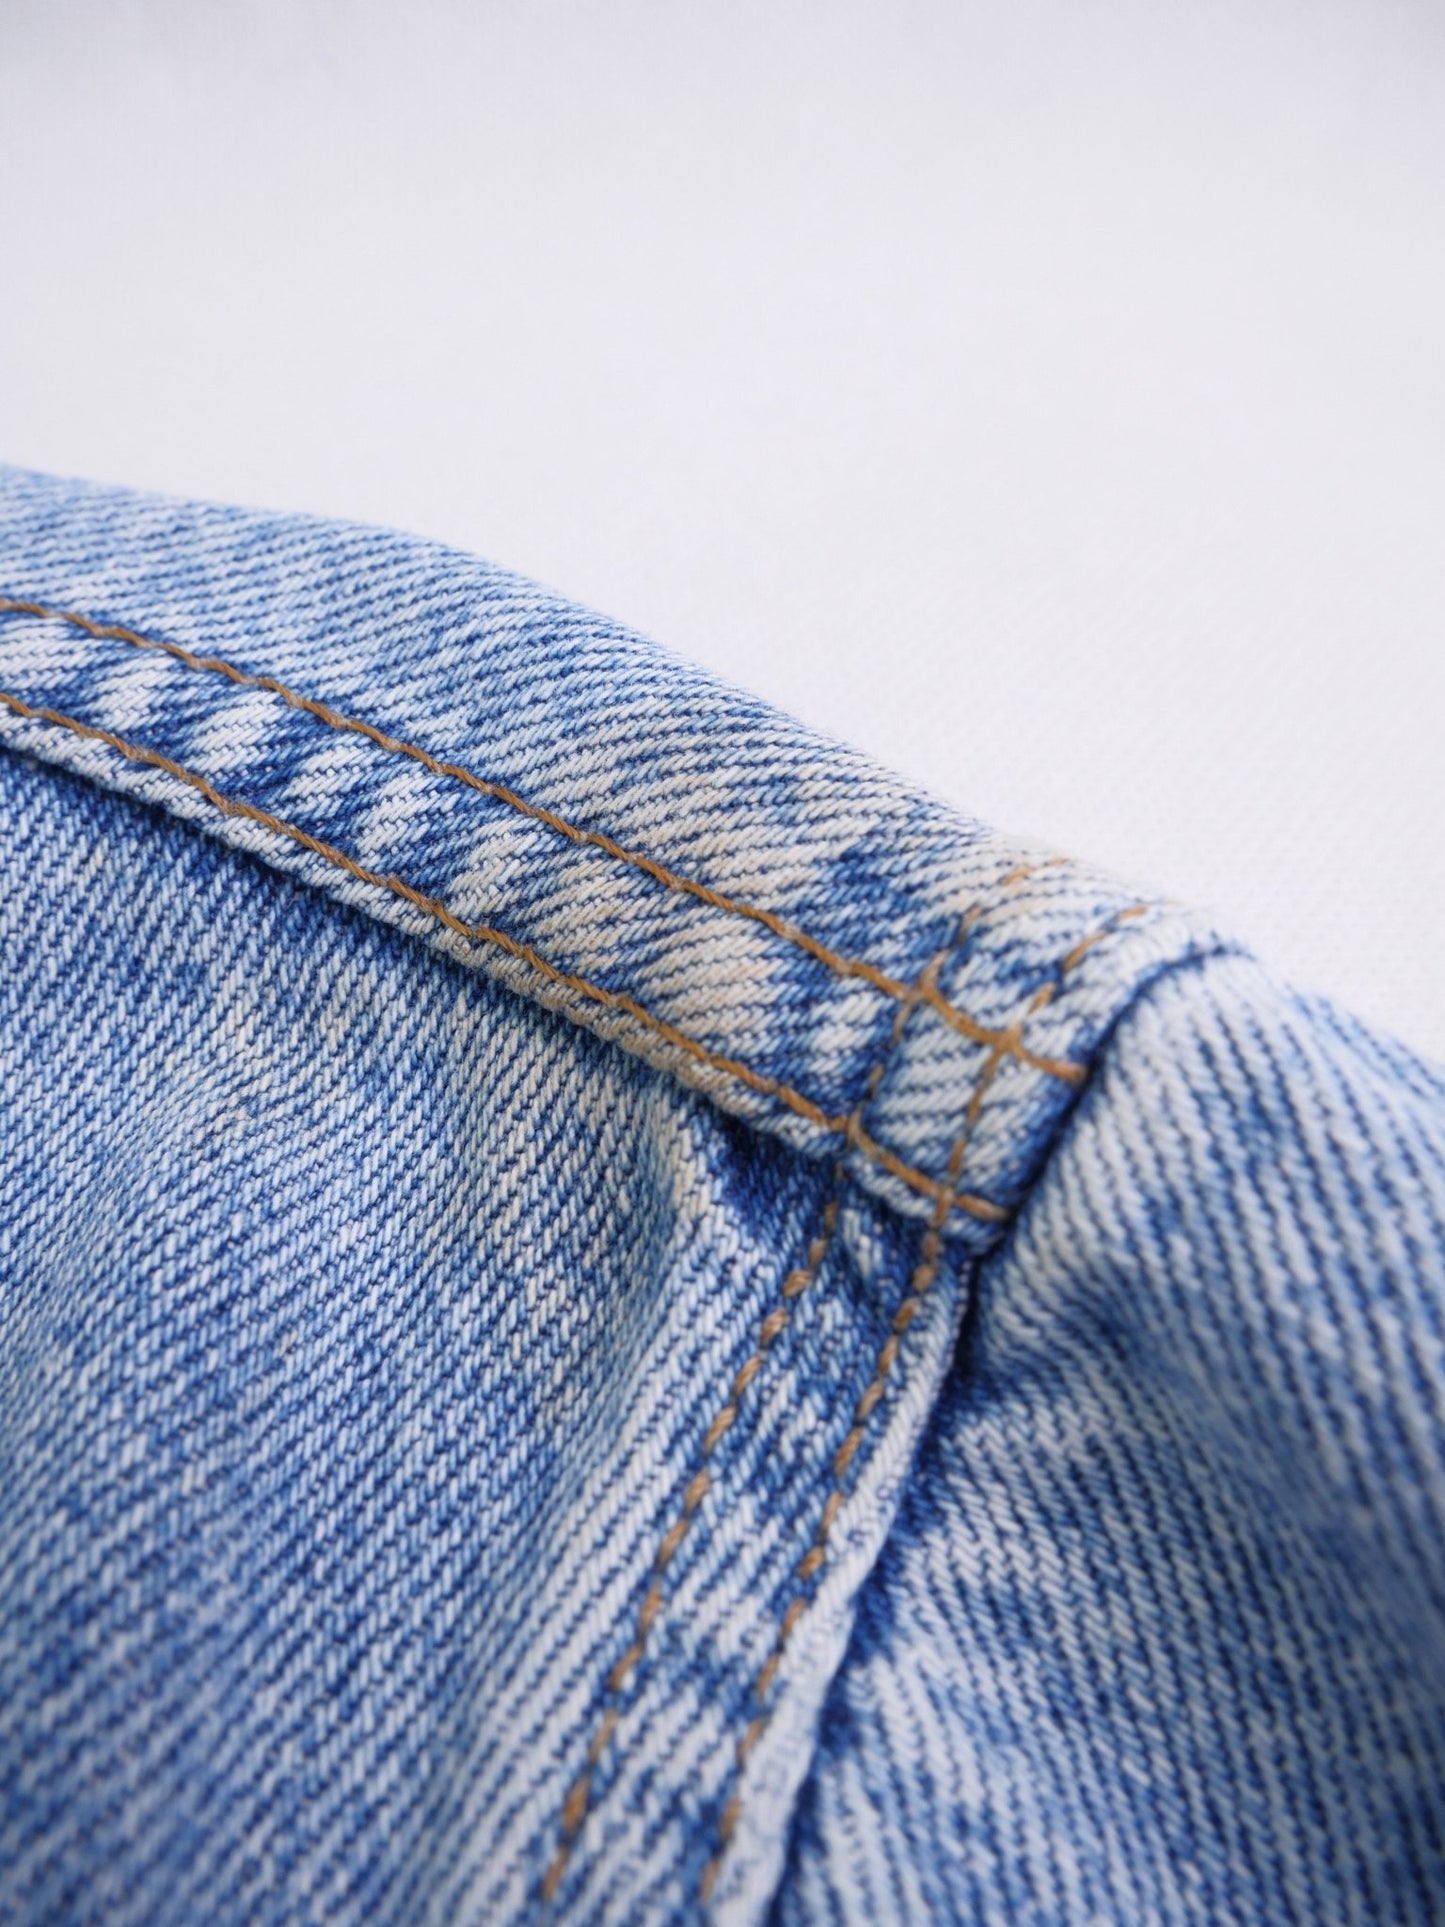 levis patched Logo Vintage Jeans Jacke - Peeces